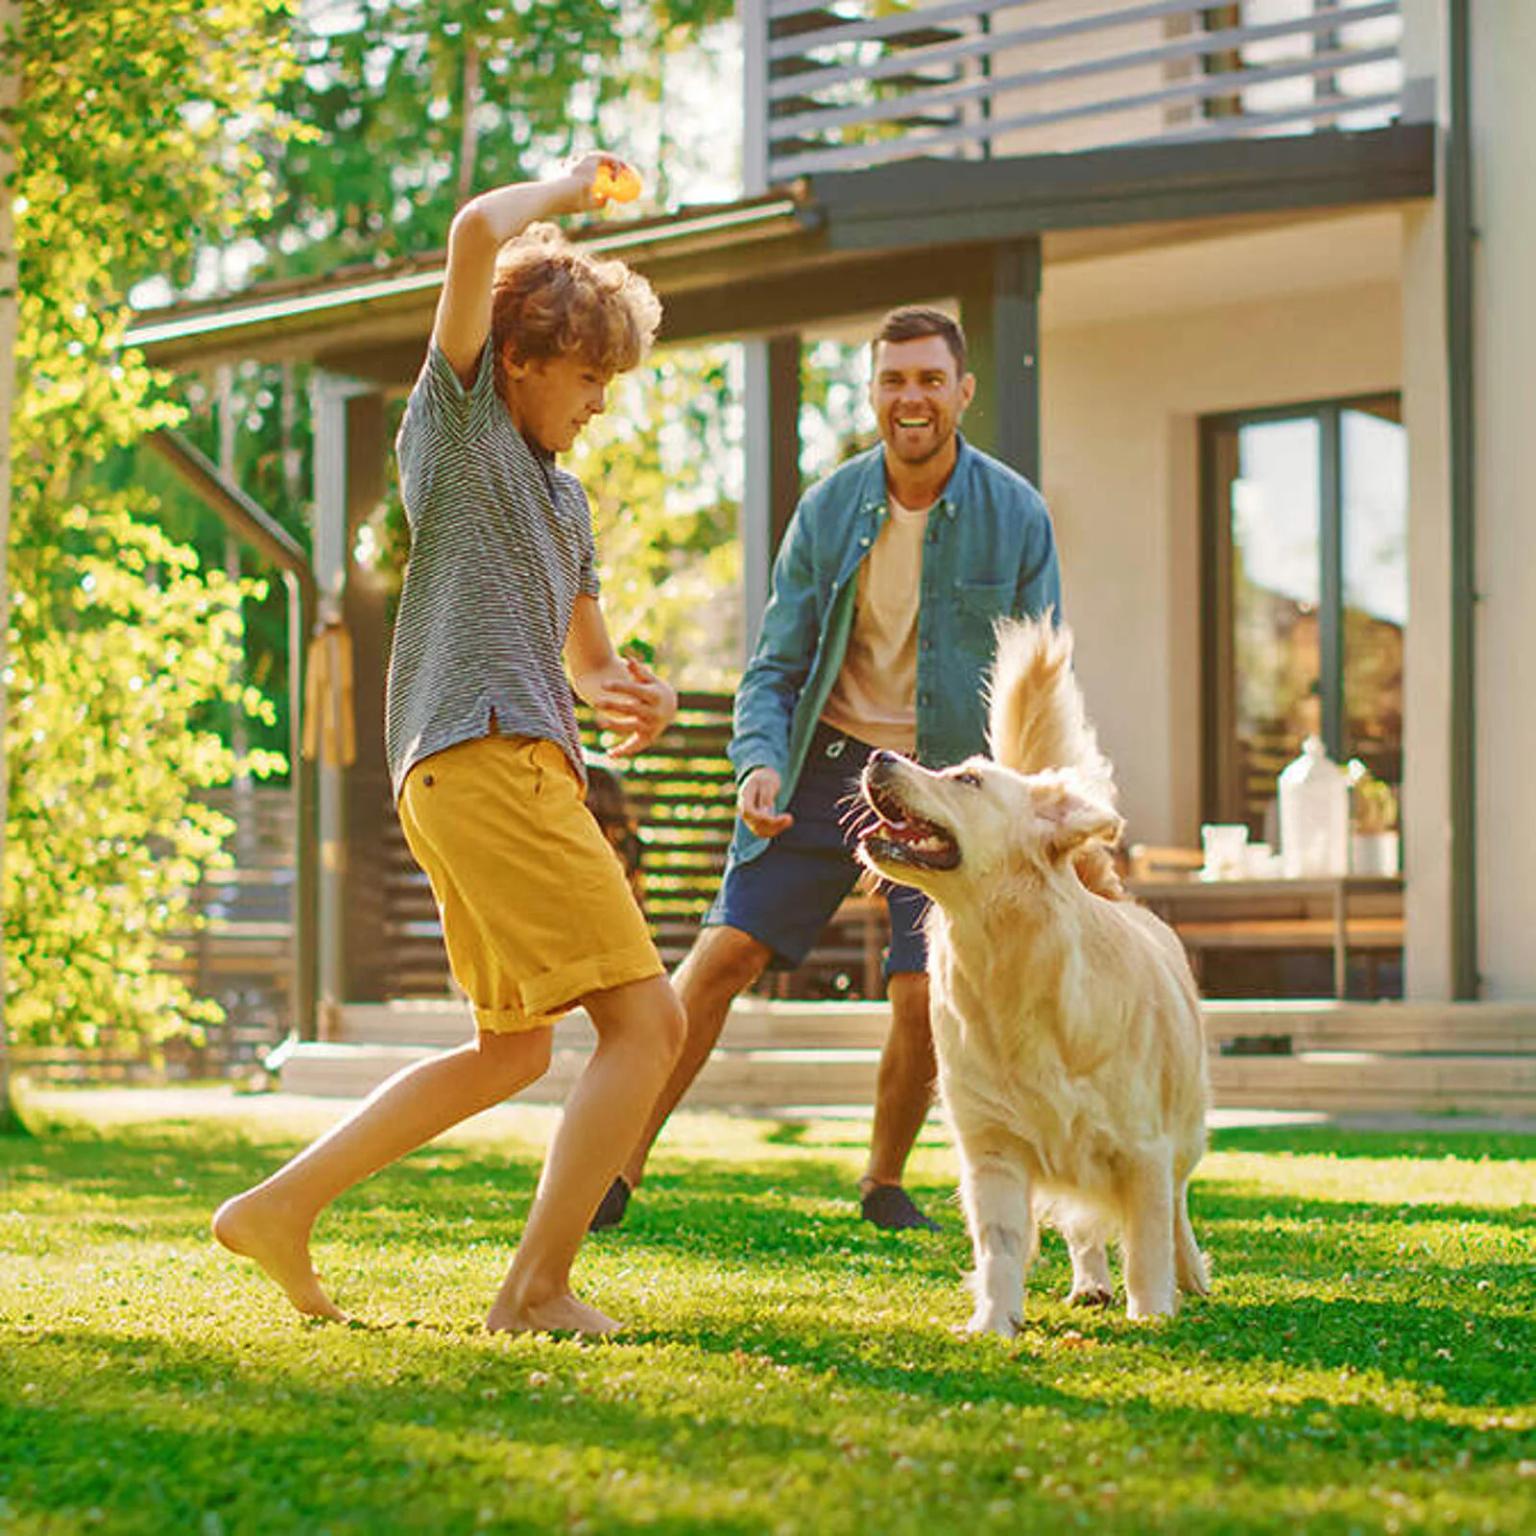 Vater, Sohn und Hund spielen mit einem Ball im Garten